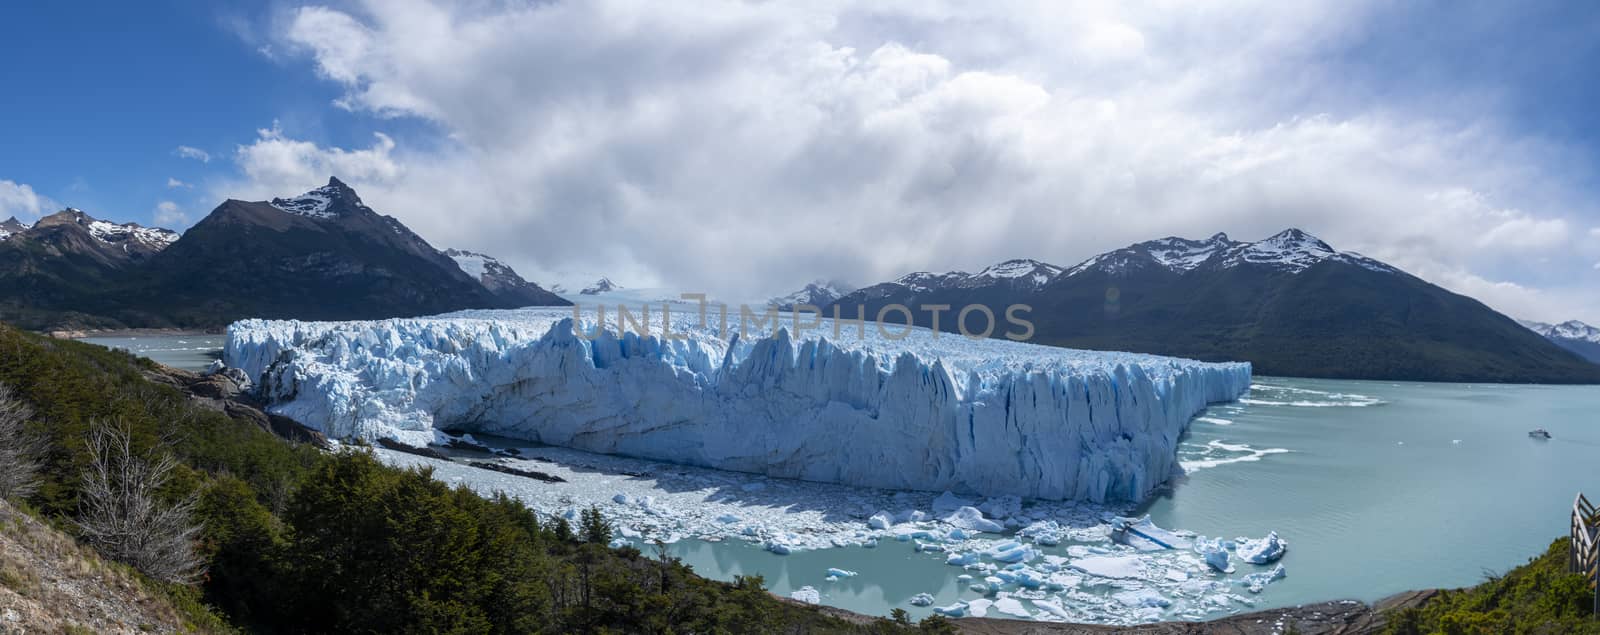 The Perito Moreno Glacier, El Calafate, Argentina by MichaelMou85